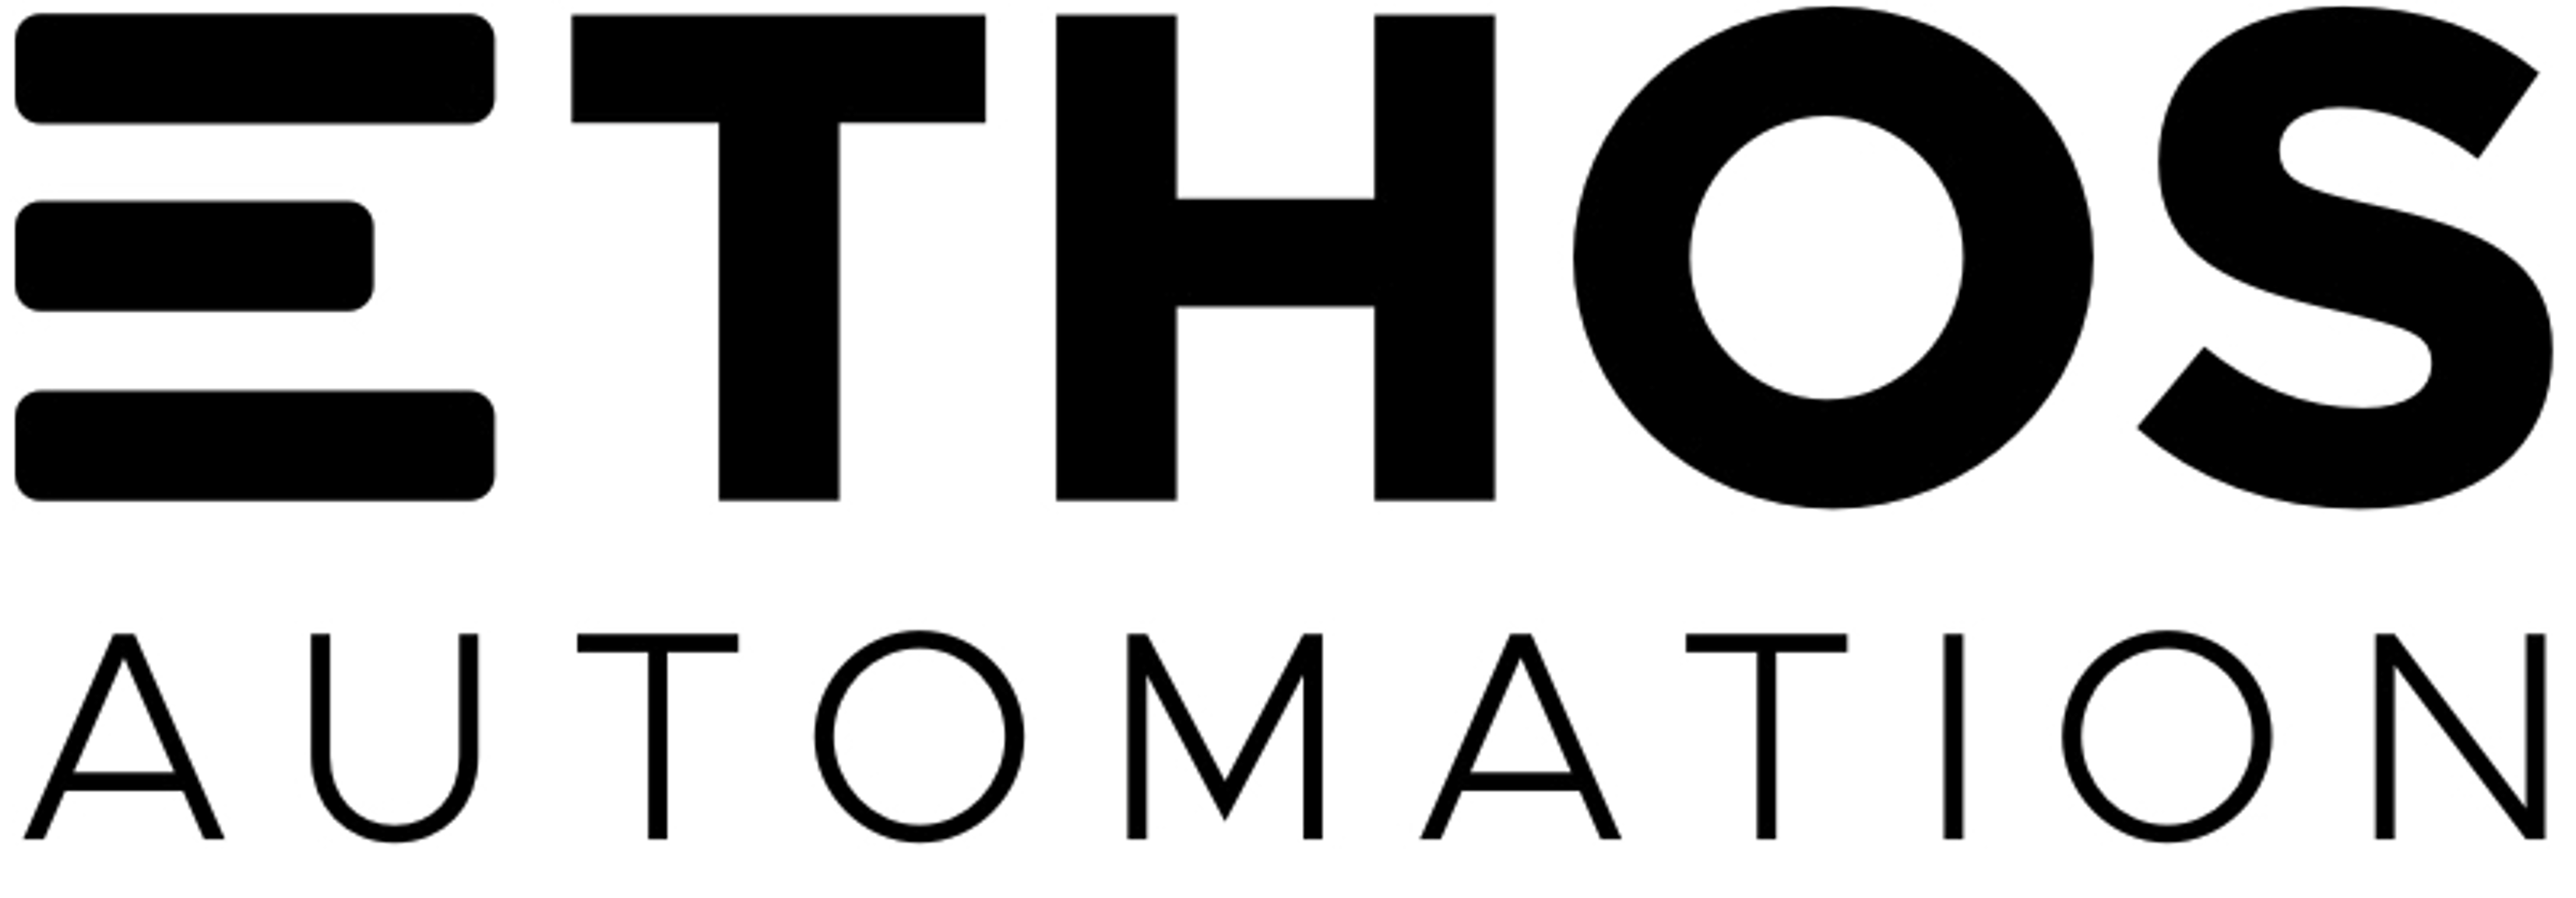 Ethos Automation